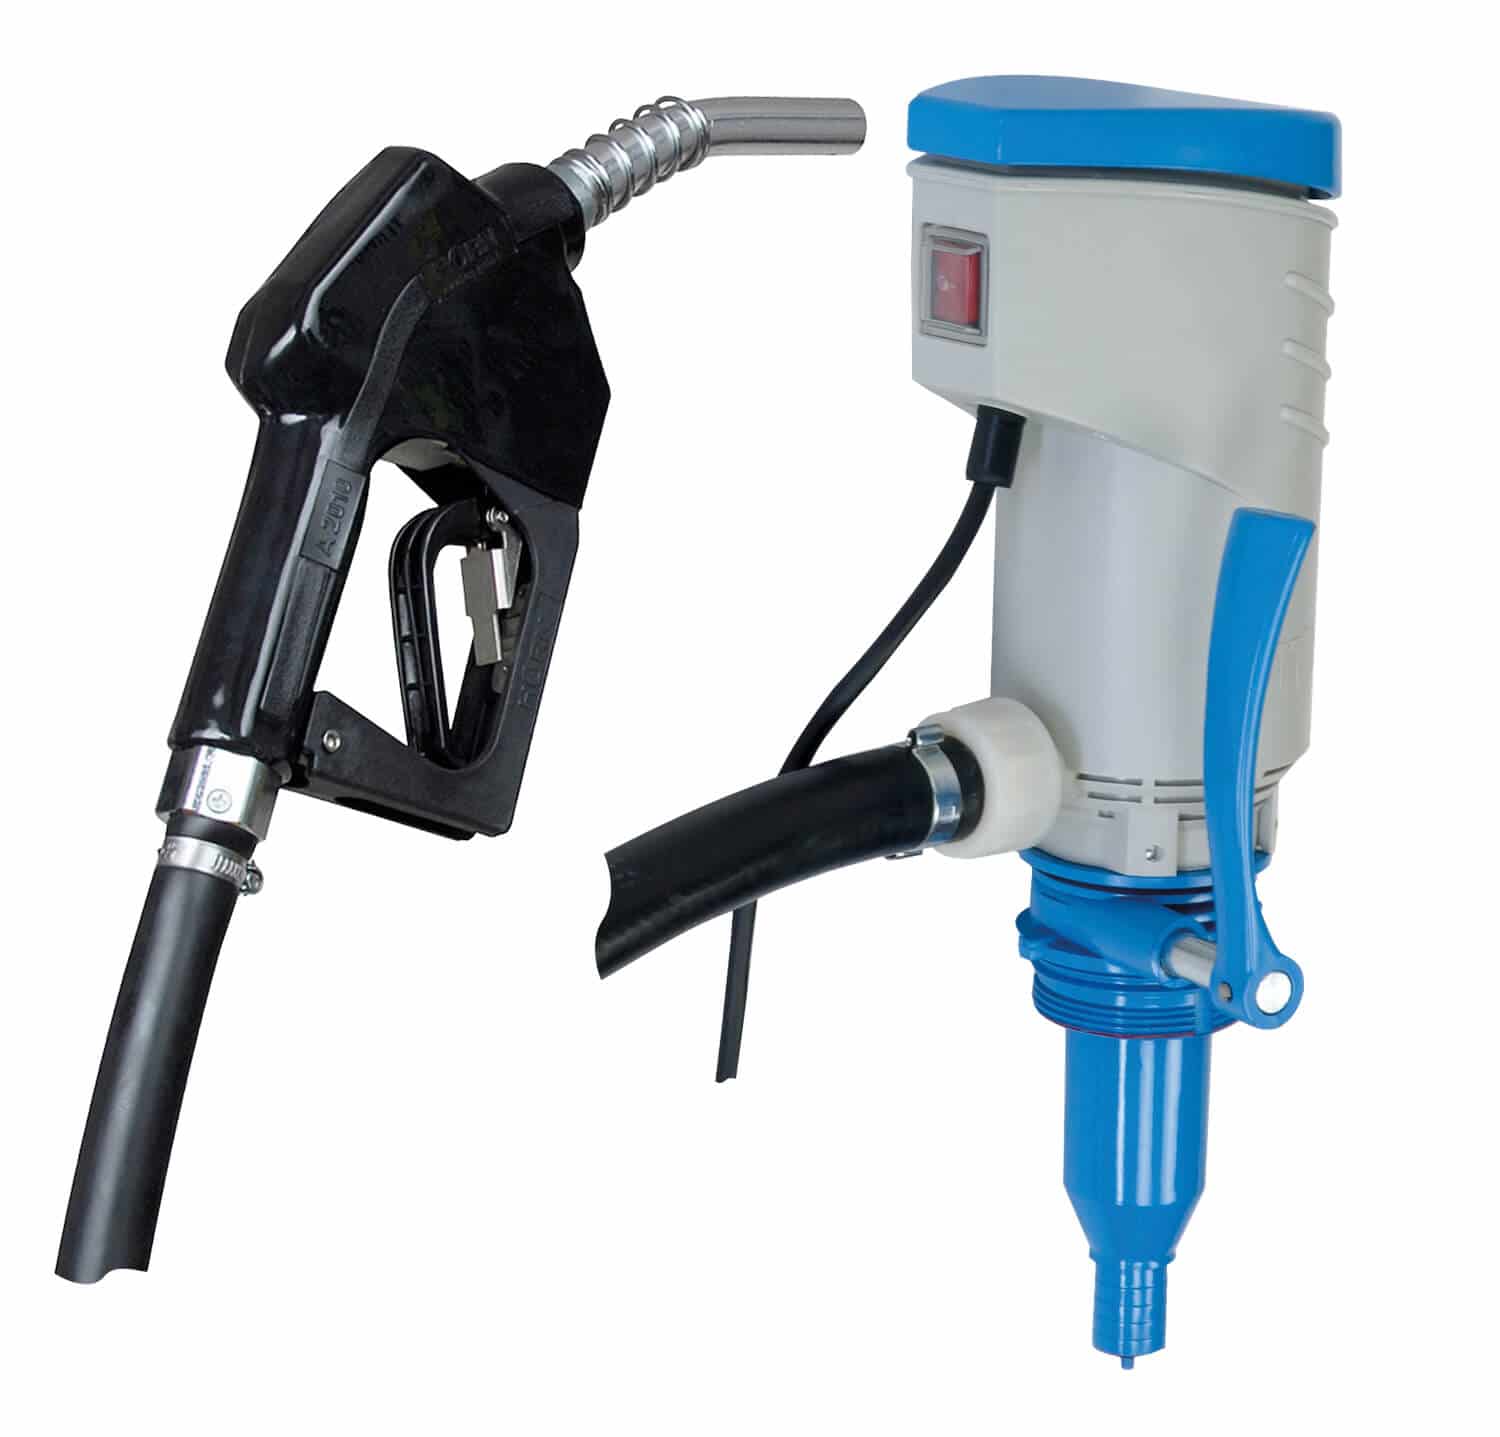 Elektrische Förderpumpe (230 V) mit Automatik-Zapfpistole für die Medien Diesel und Heizöl.